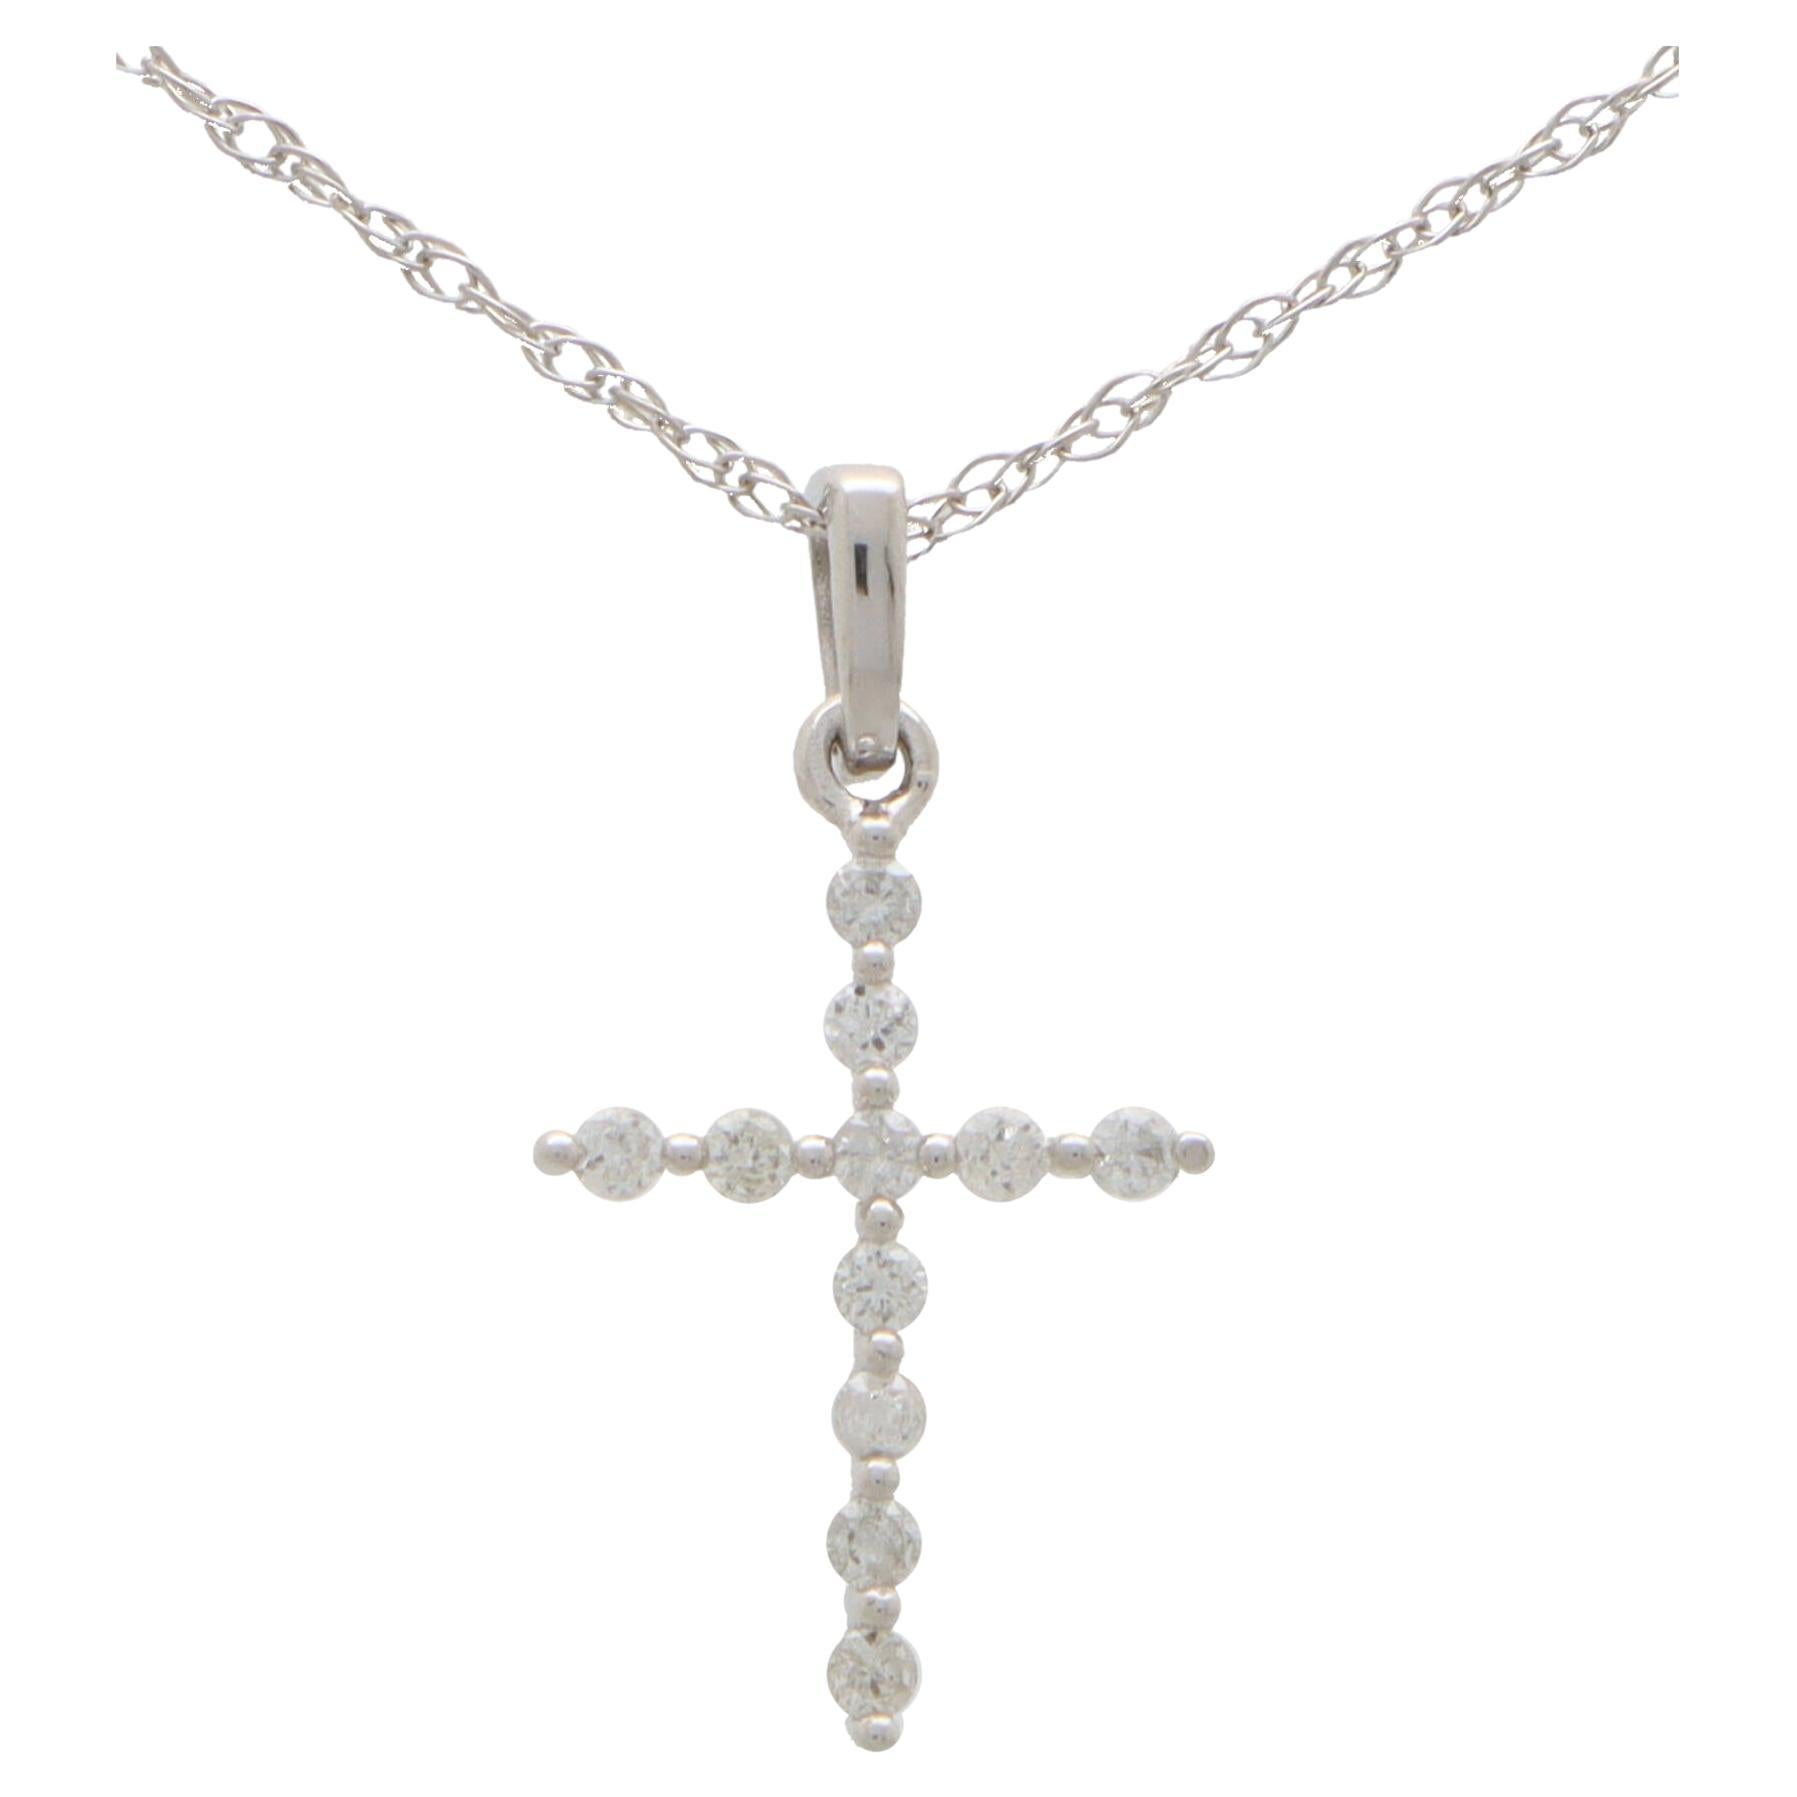 Contemporary Diamond Cross Anhänger Halskette in 14k Weißgold